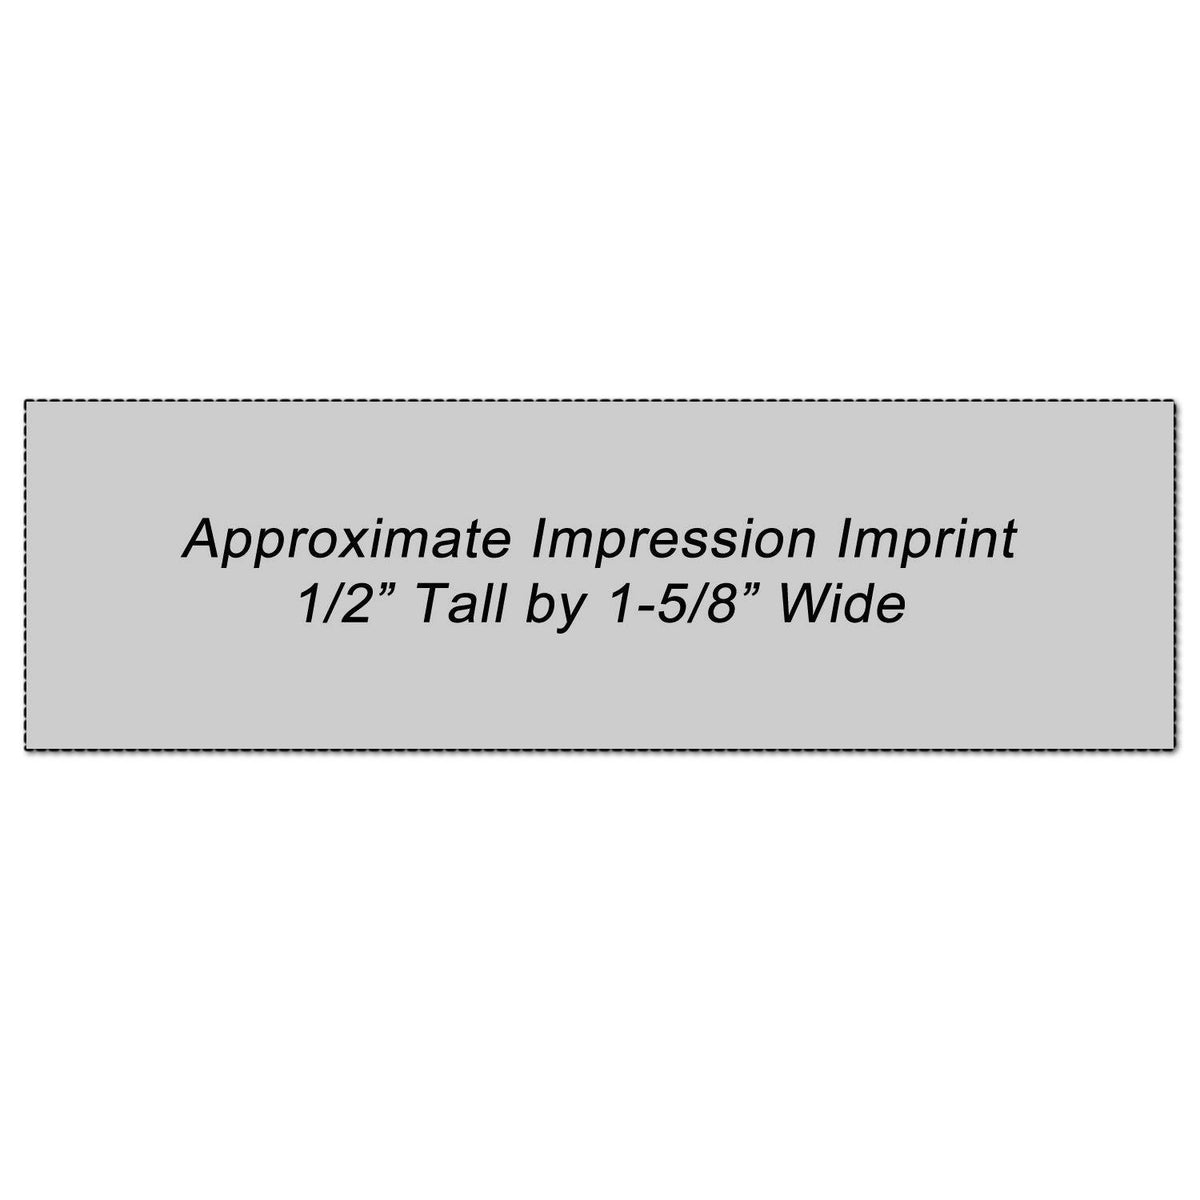 Official Xstamper Stamp Impression Size